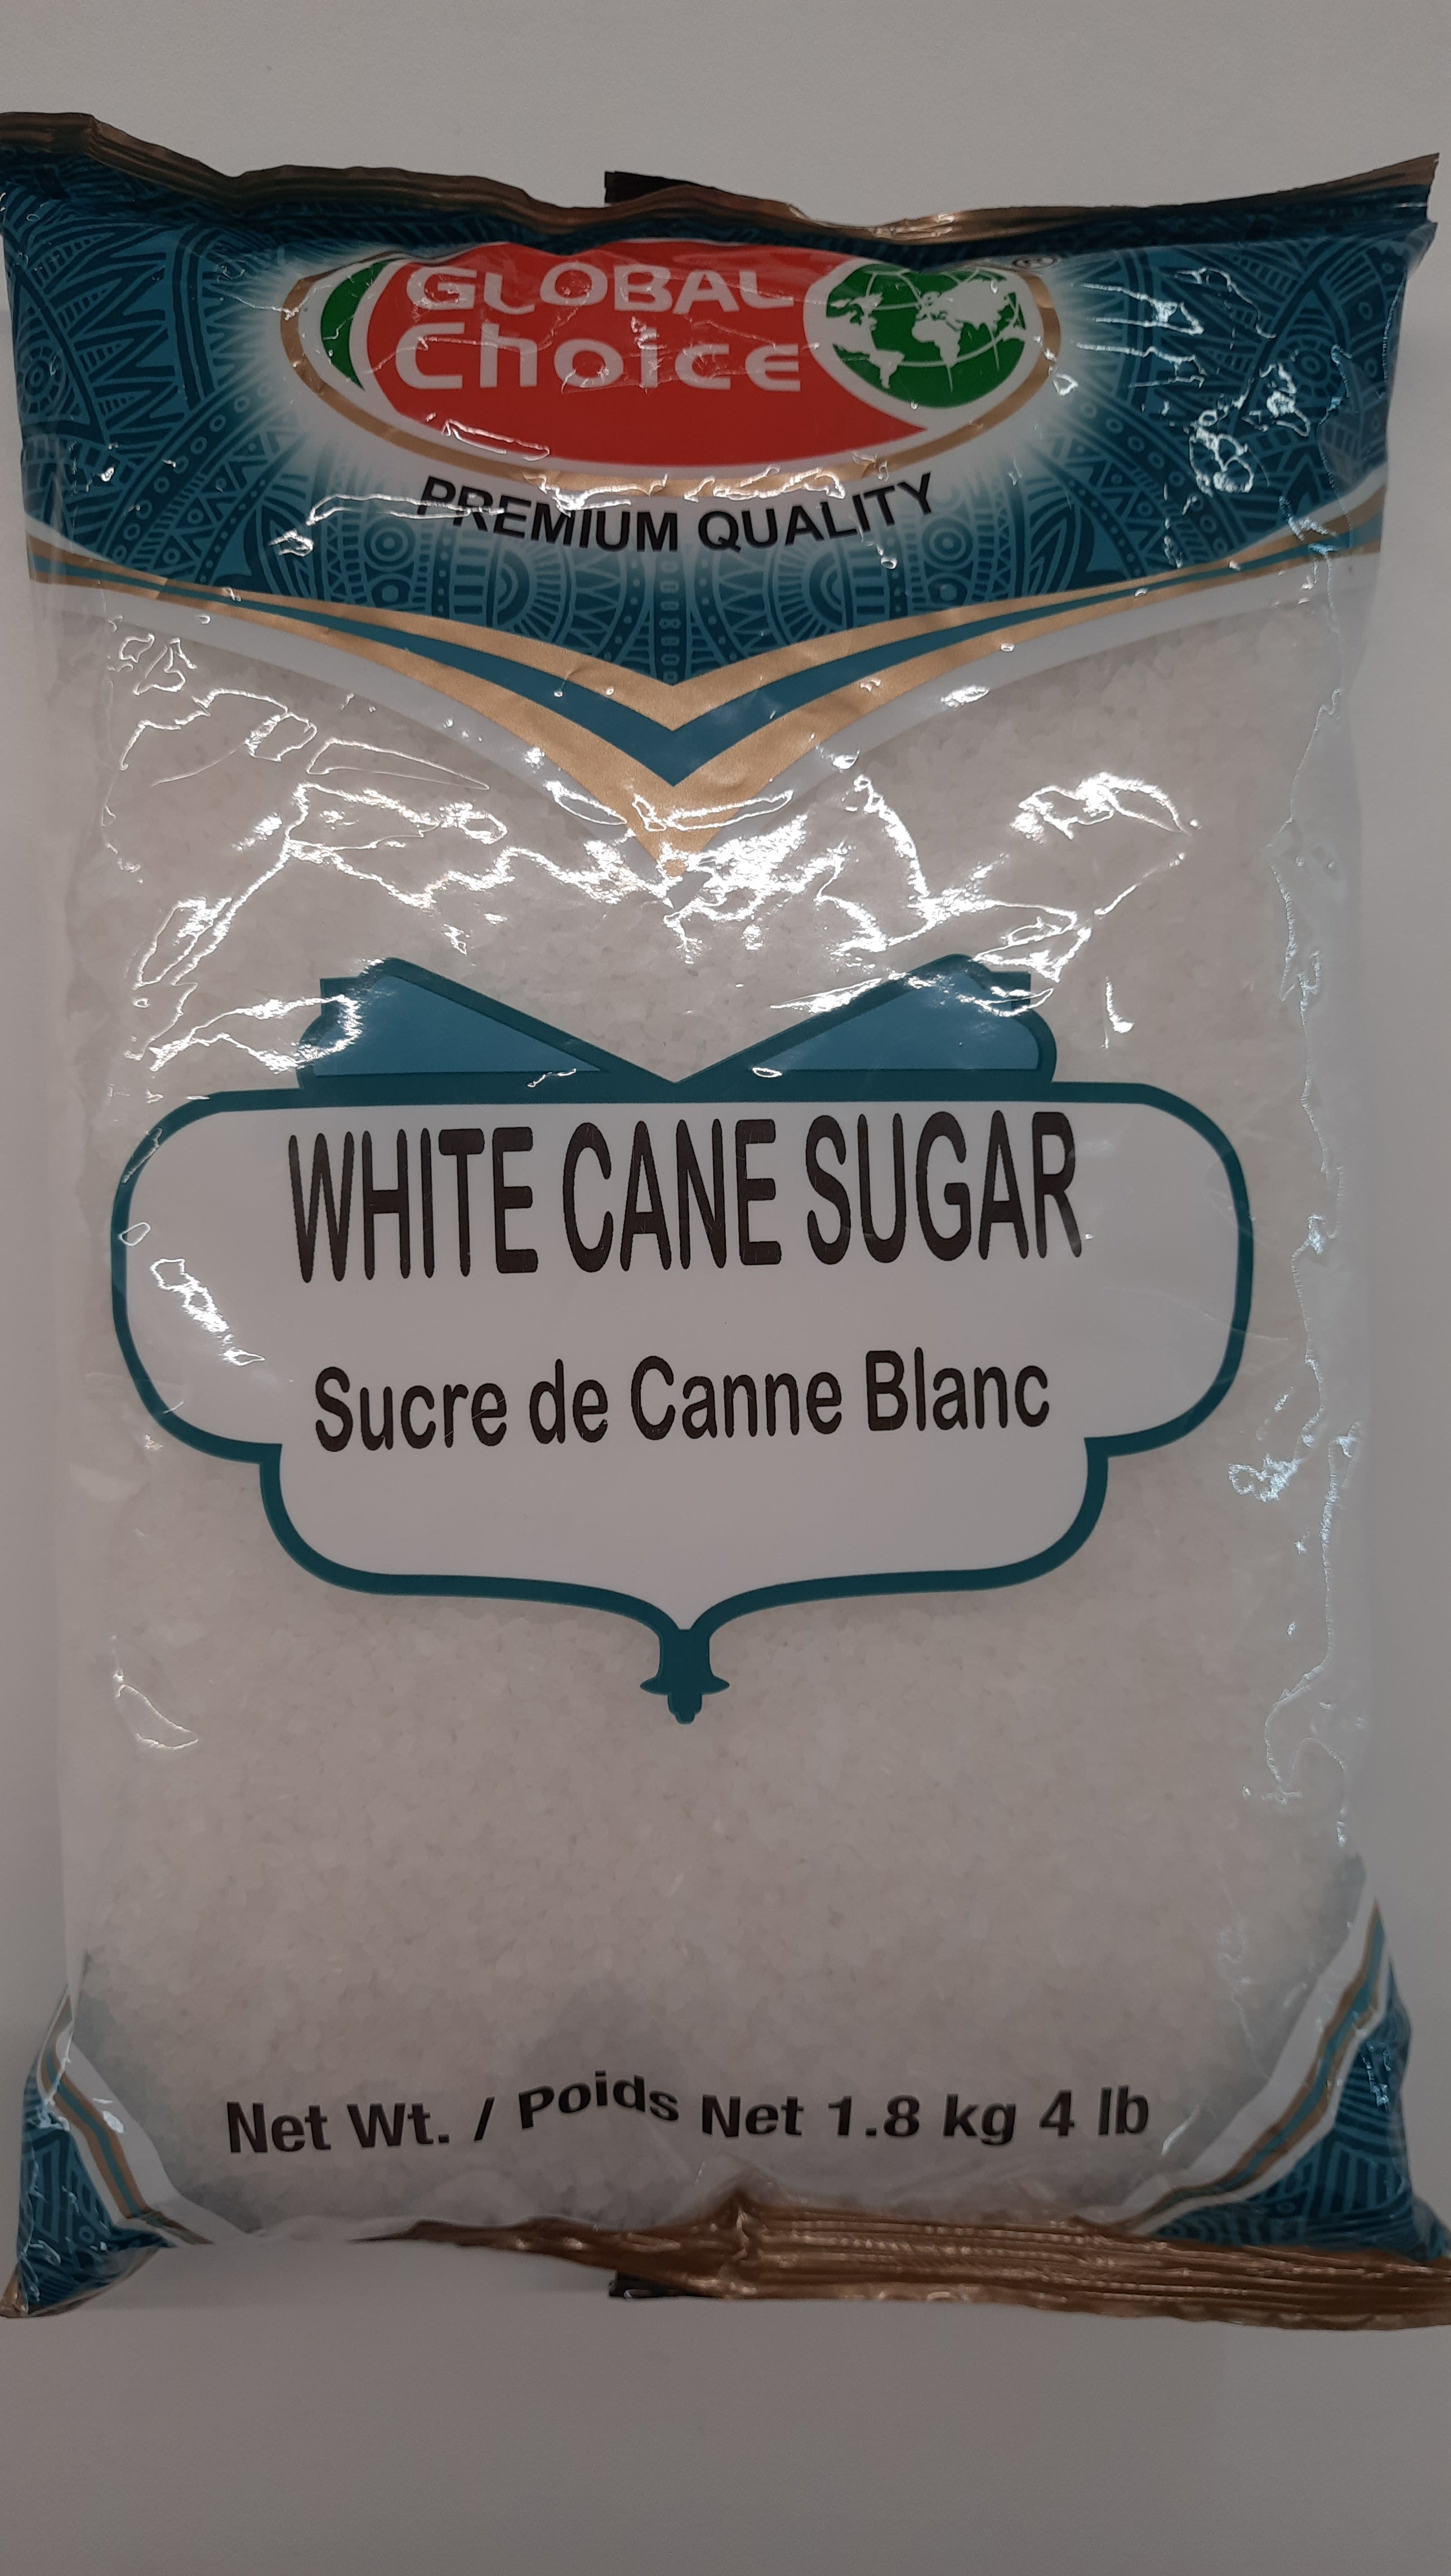 Global Choice - White Cane Sugar 4lb